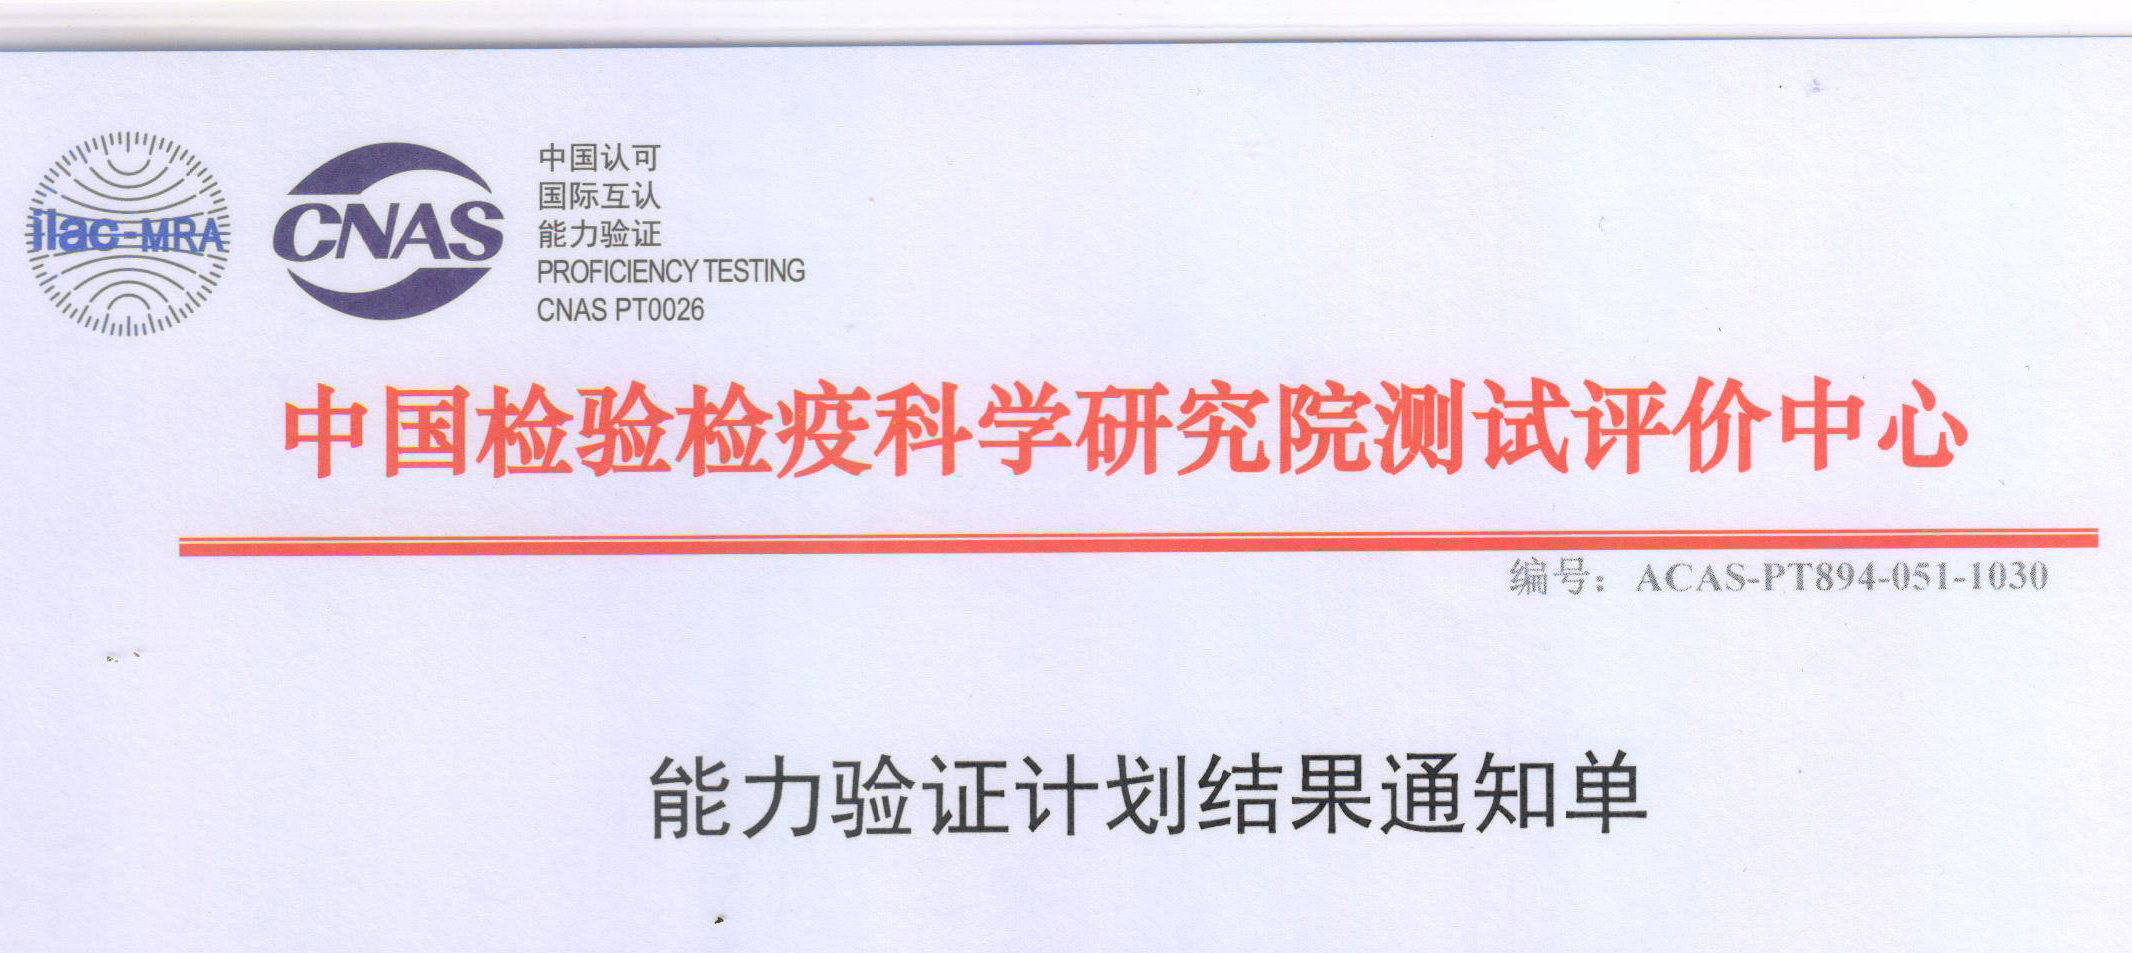 公司检测能力通过了中国检验检疫科学研究院测试评价中心的验证